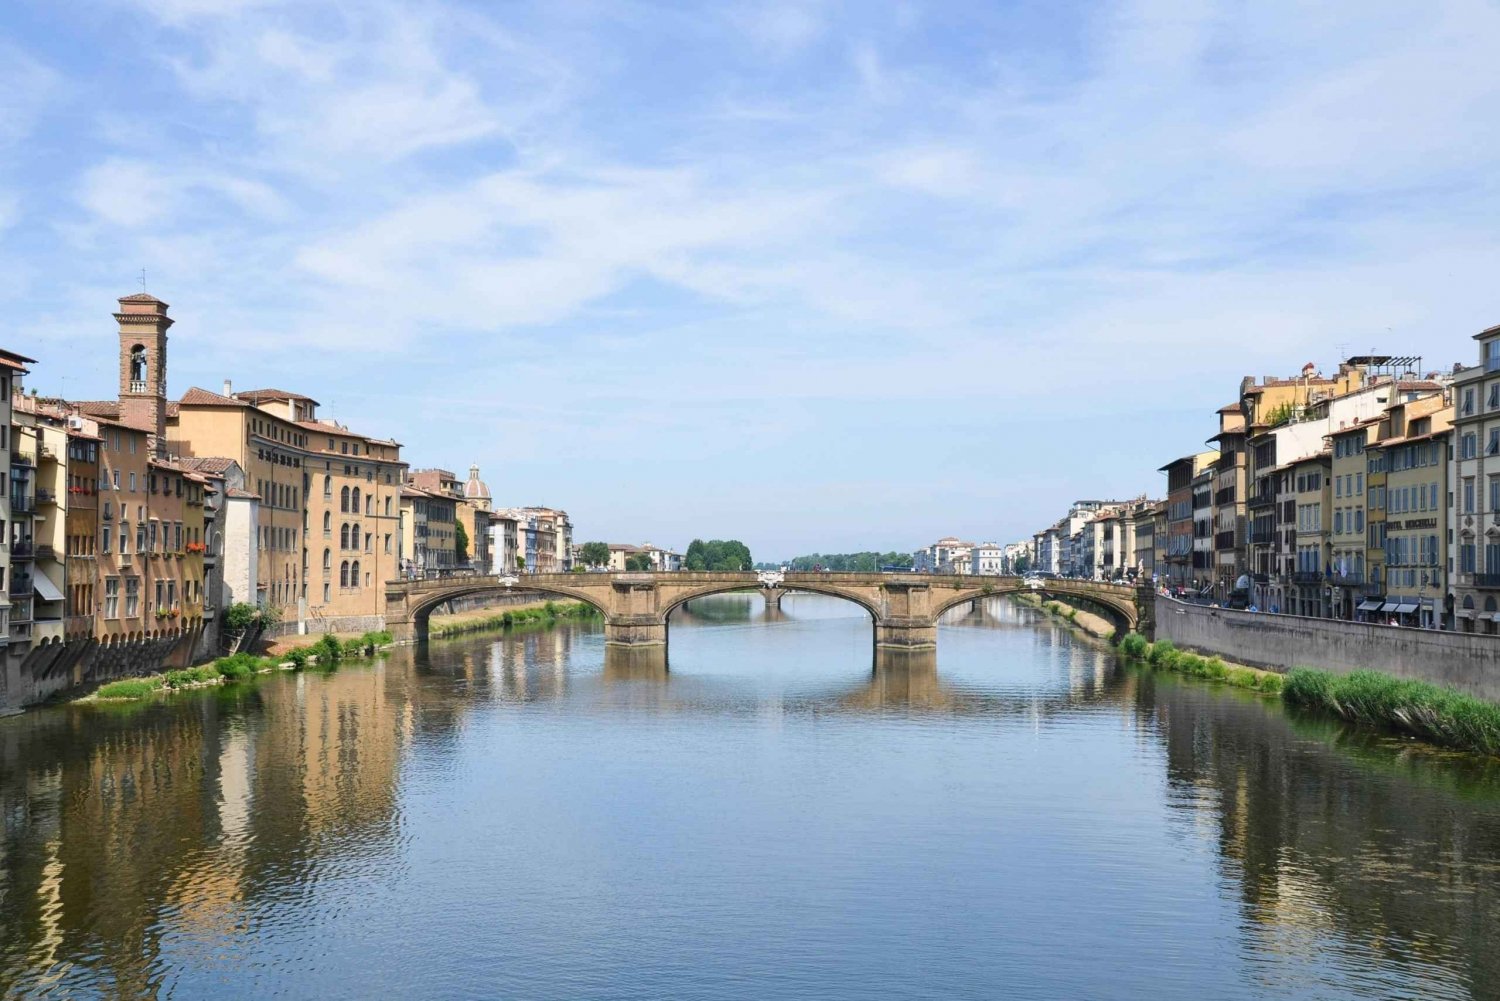 Katedra we Florencji i rejs po rzece Arno: podróż przez Ar